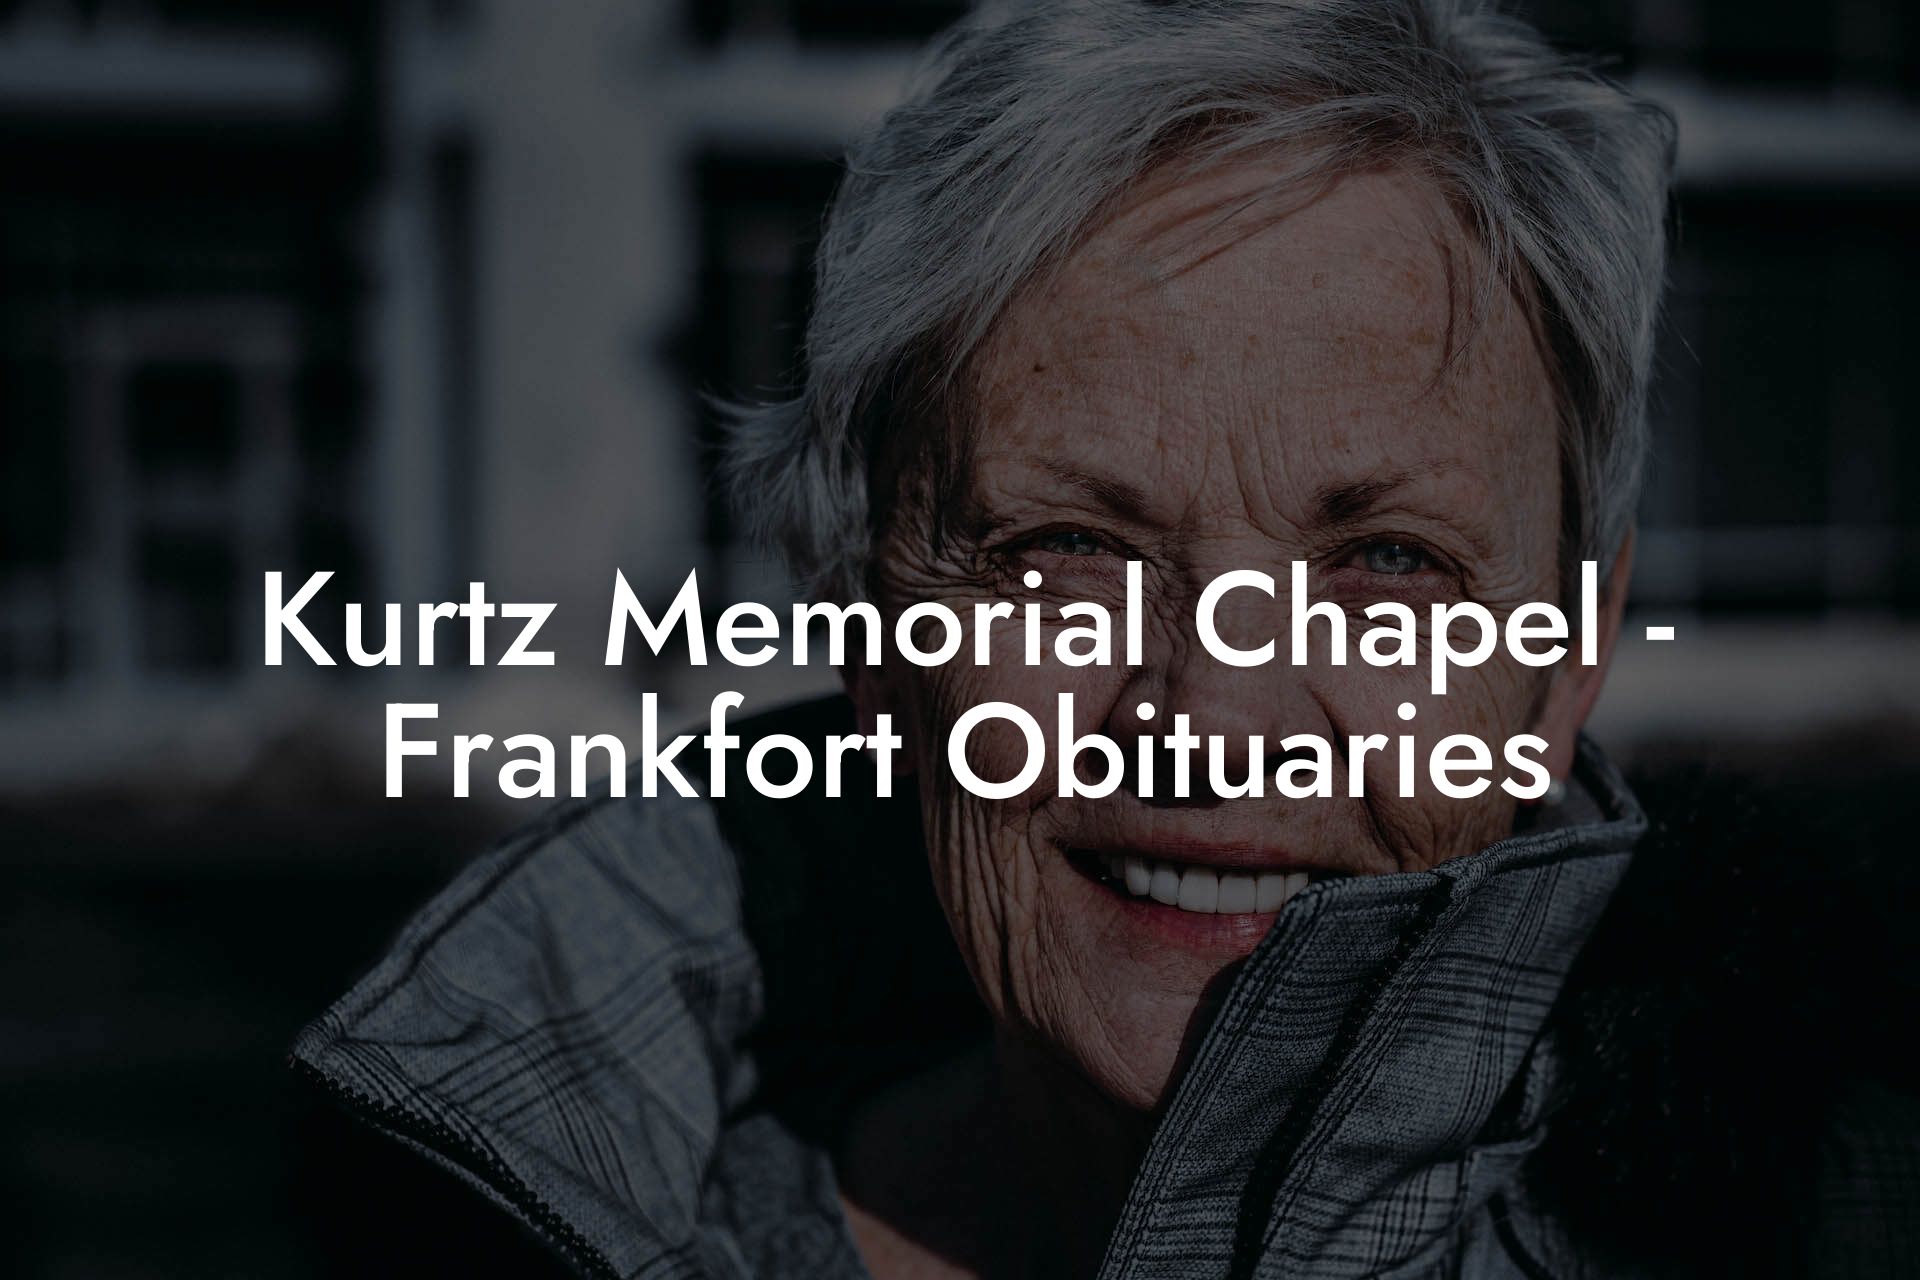 Kurtz Memorial Chapel - Frankfort Obituaries